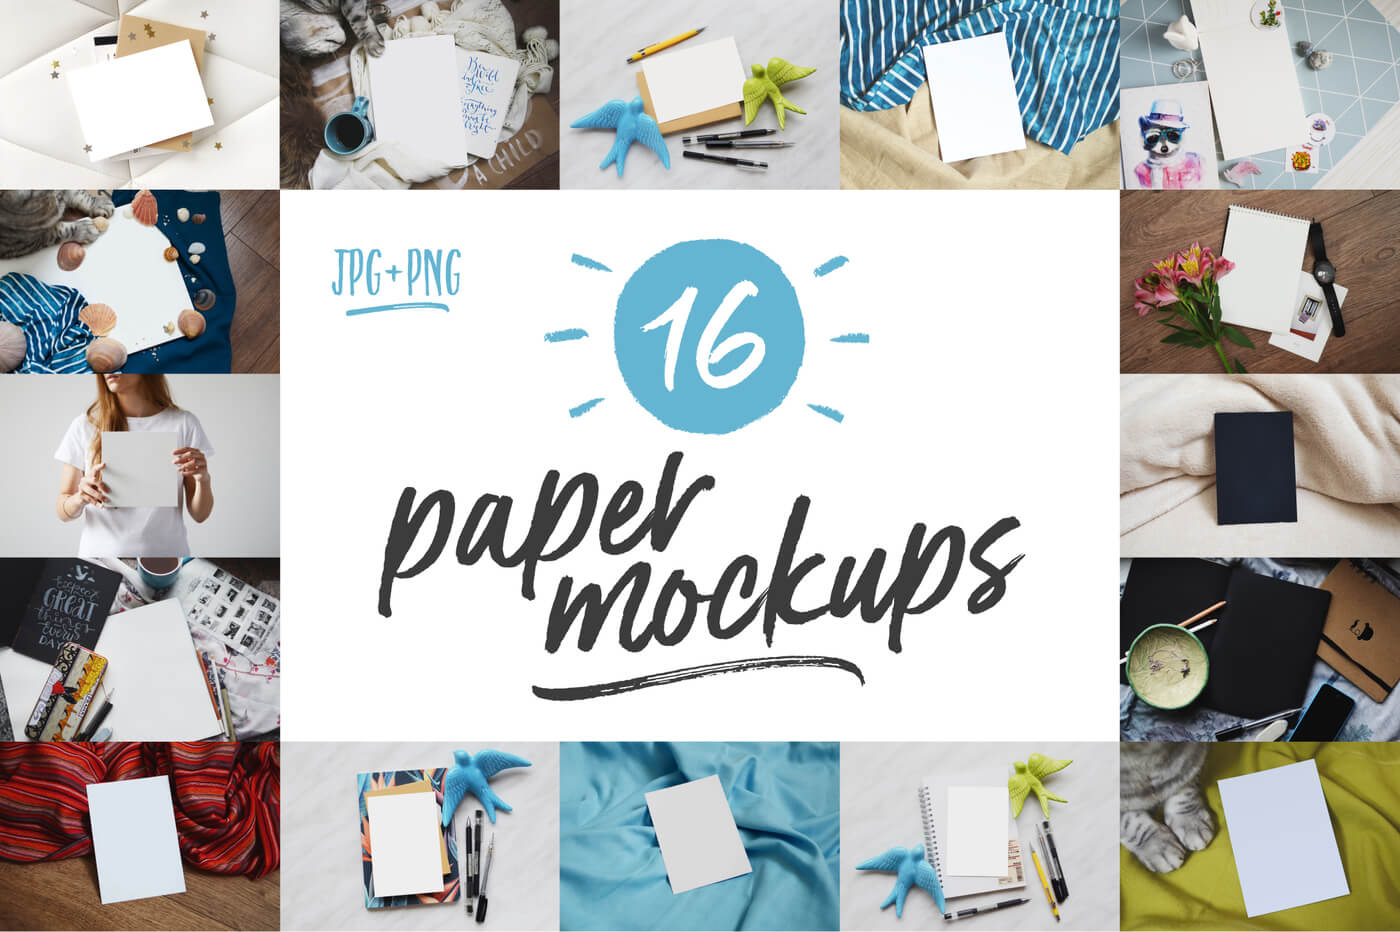 16 Paper Mockups - The Everyday Designer Bundle Vol. 03